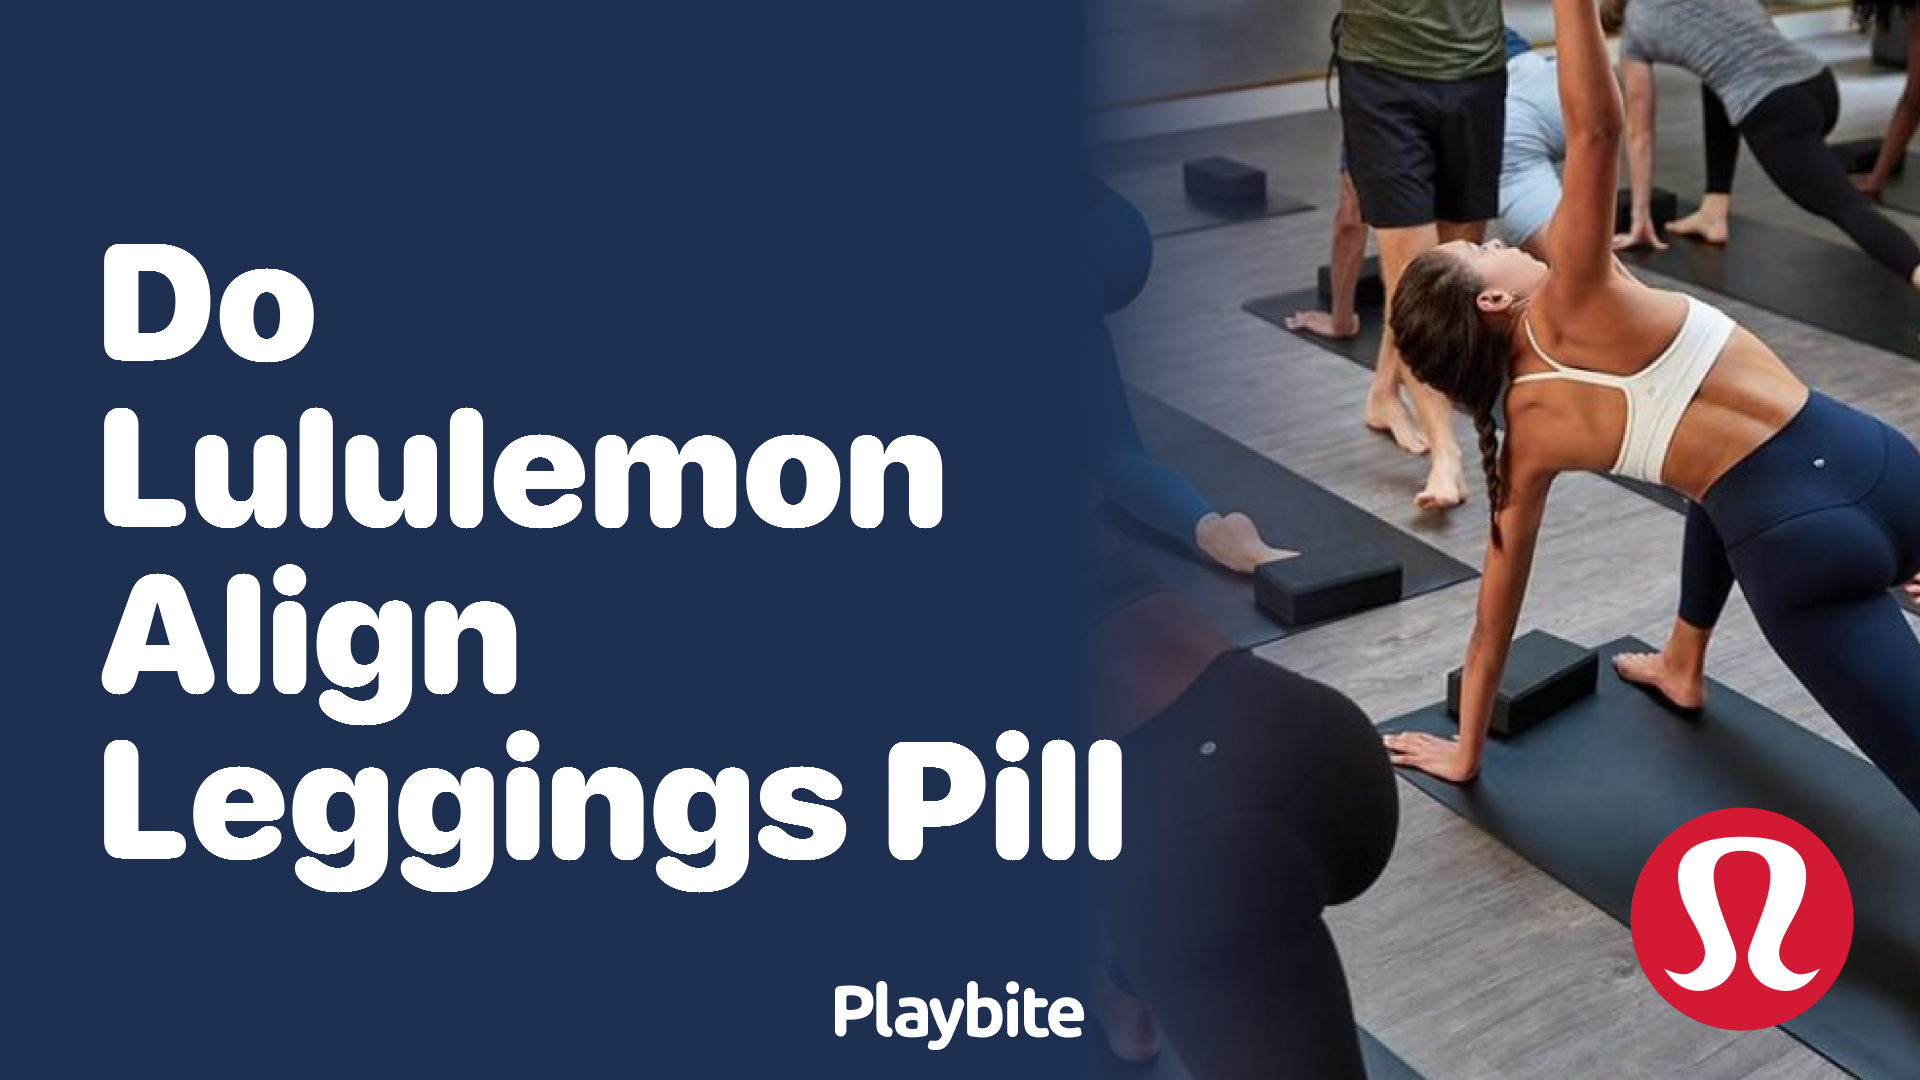 Do Lululemon Align Leggings Pill? Let's Find Out! - Playbite